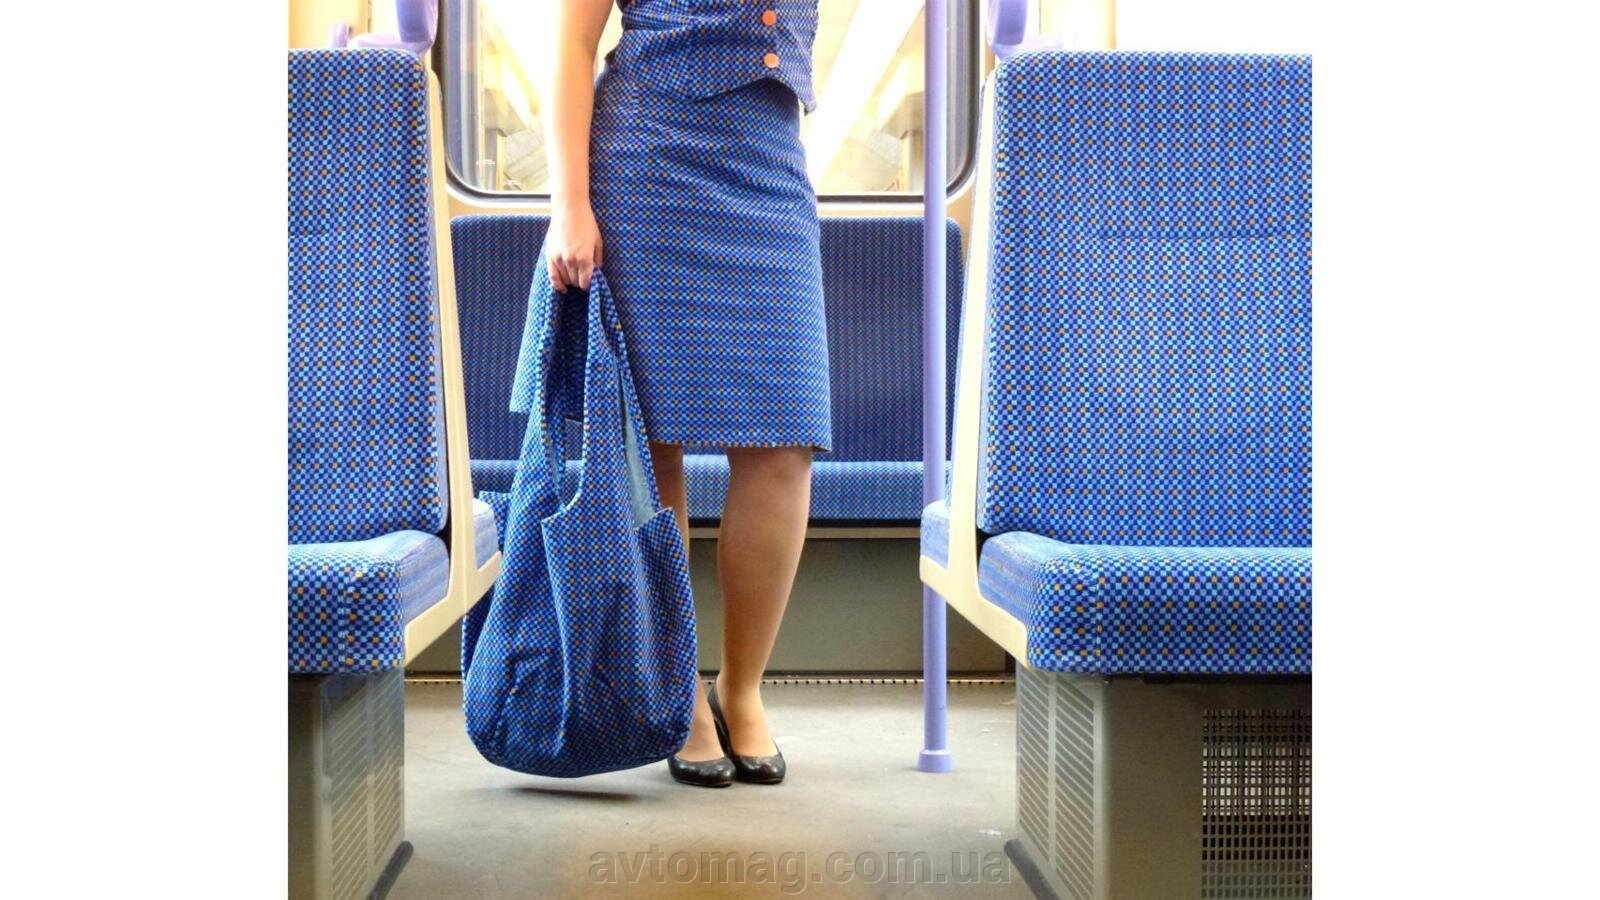 Почему обивка сидений в общественном транспорте выглядит ужасно - фото pic_9d281f94ccdcf238dd9ccf59f9149b91_1920x9000_1.jpg